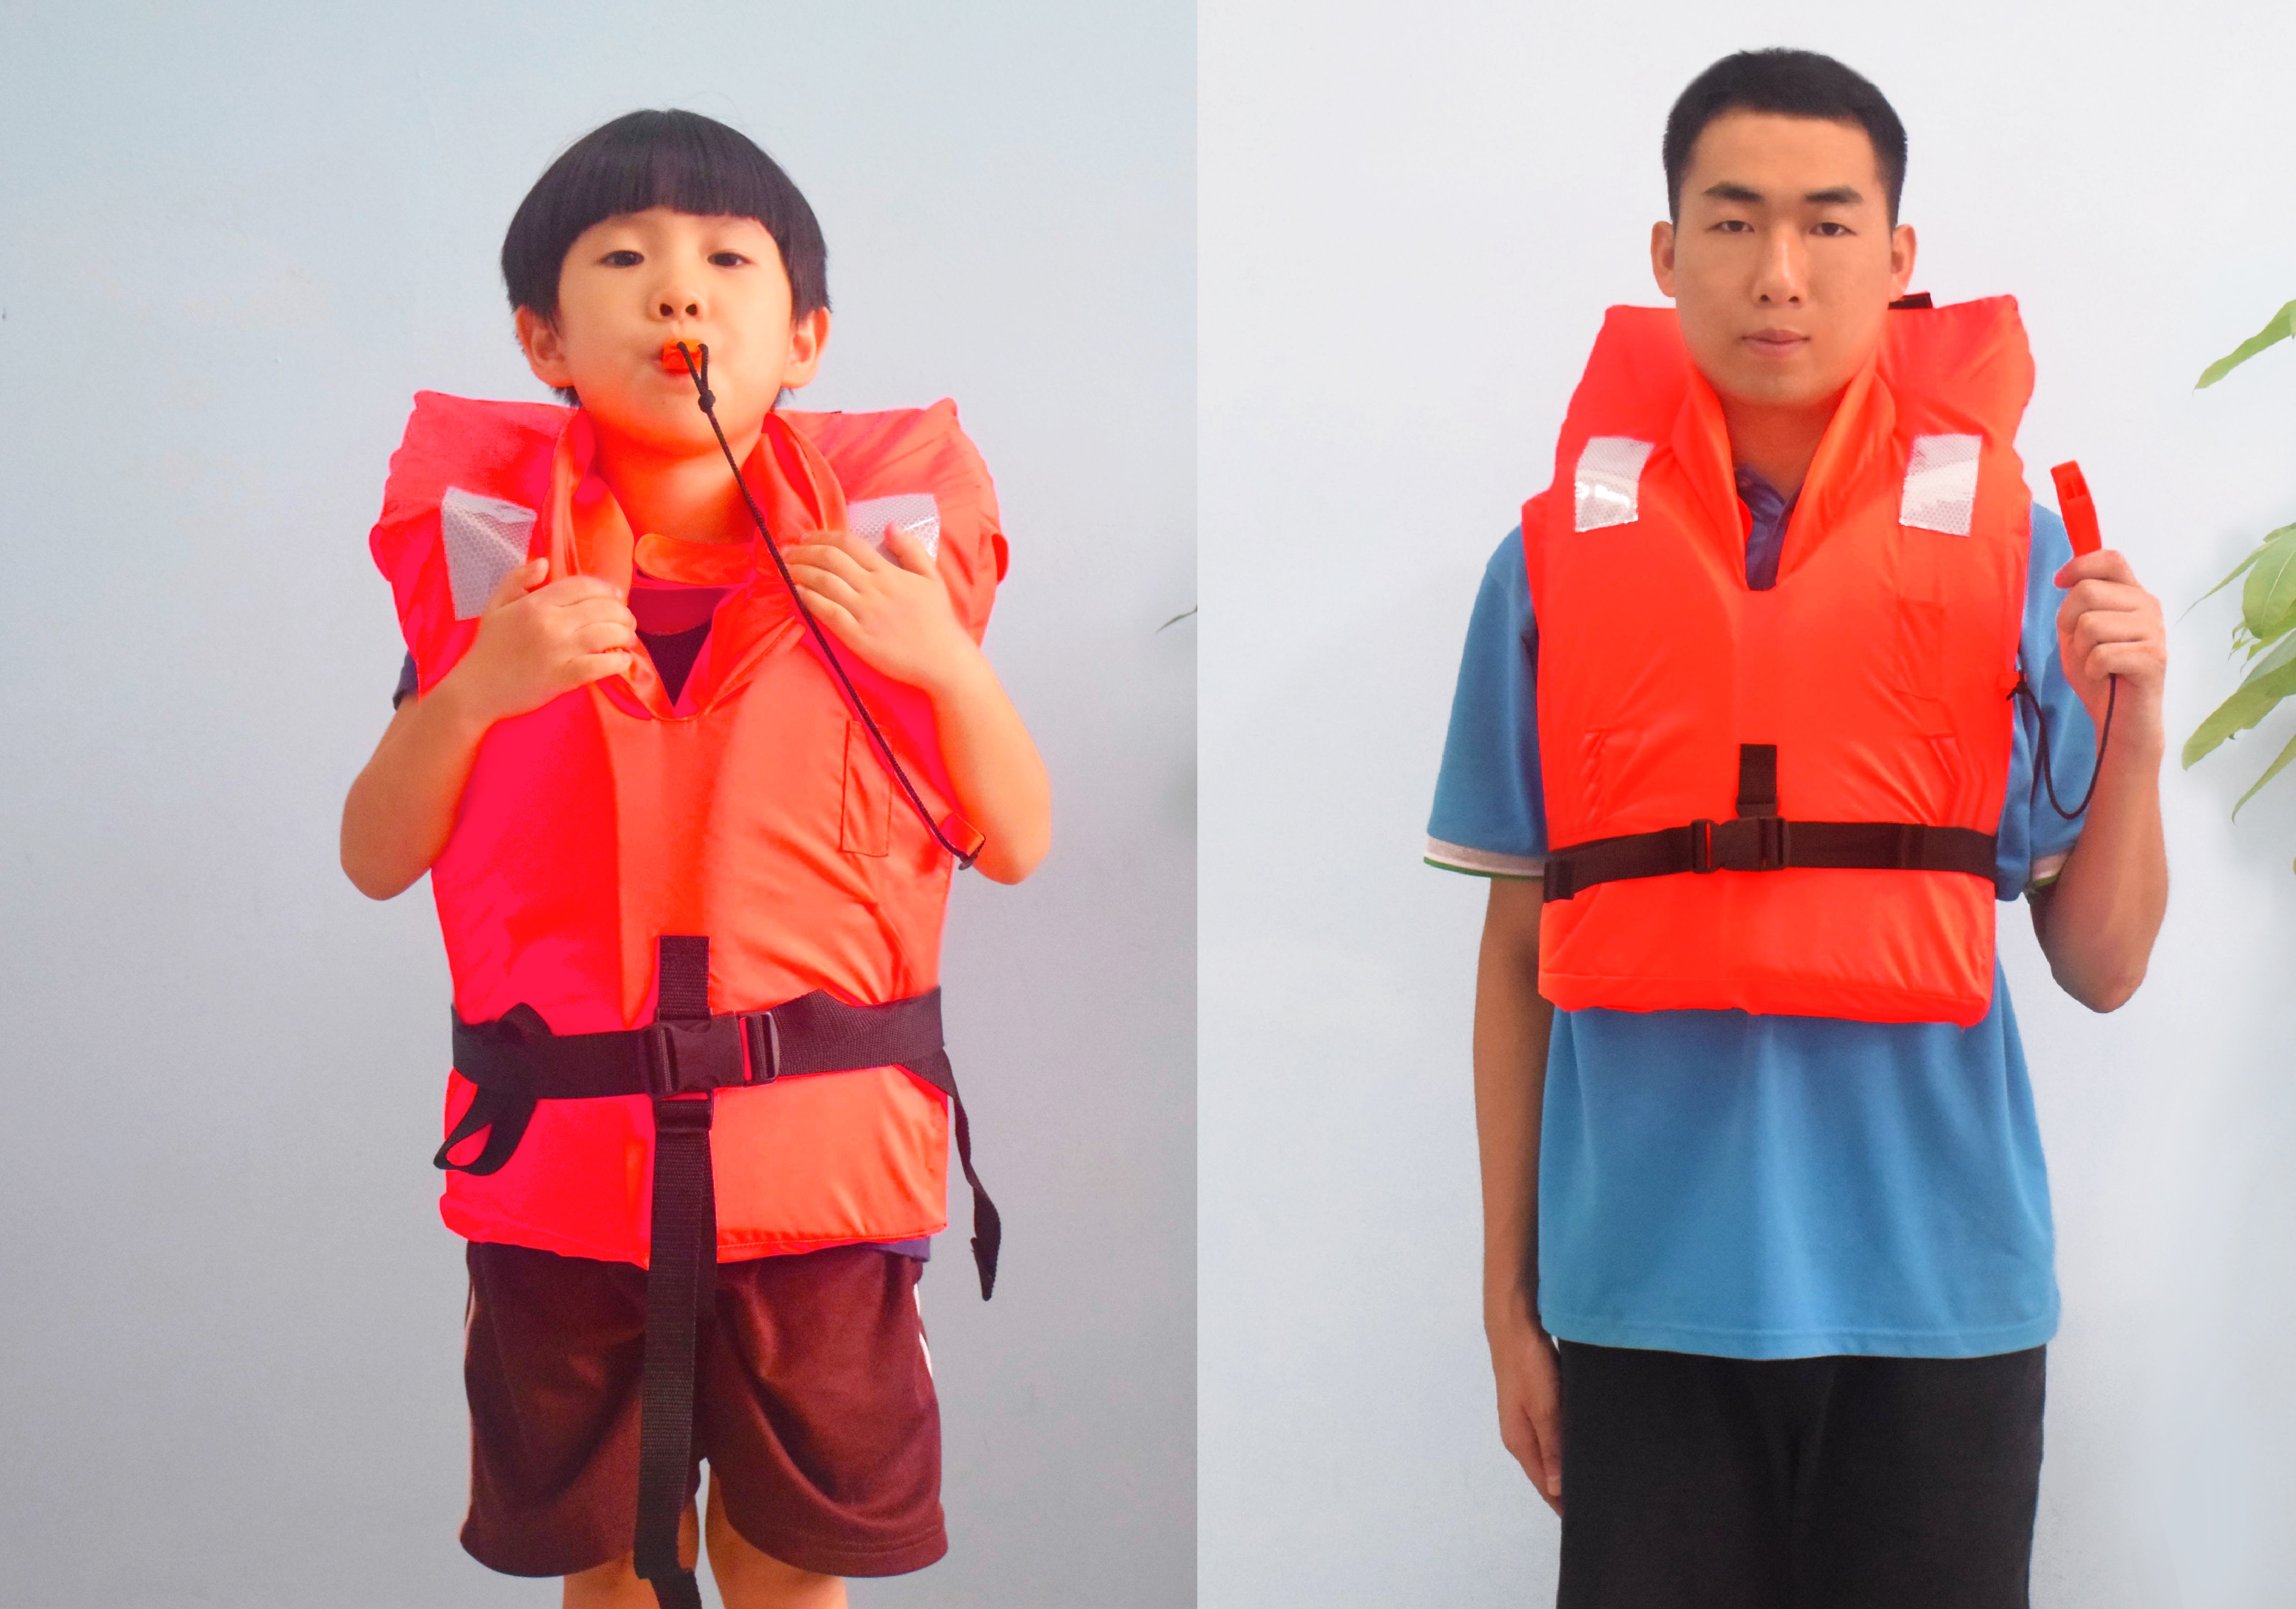 海事處指理大研製成人兒童通用救生衣快將投產| 頭條日報